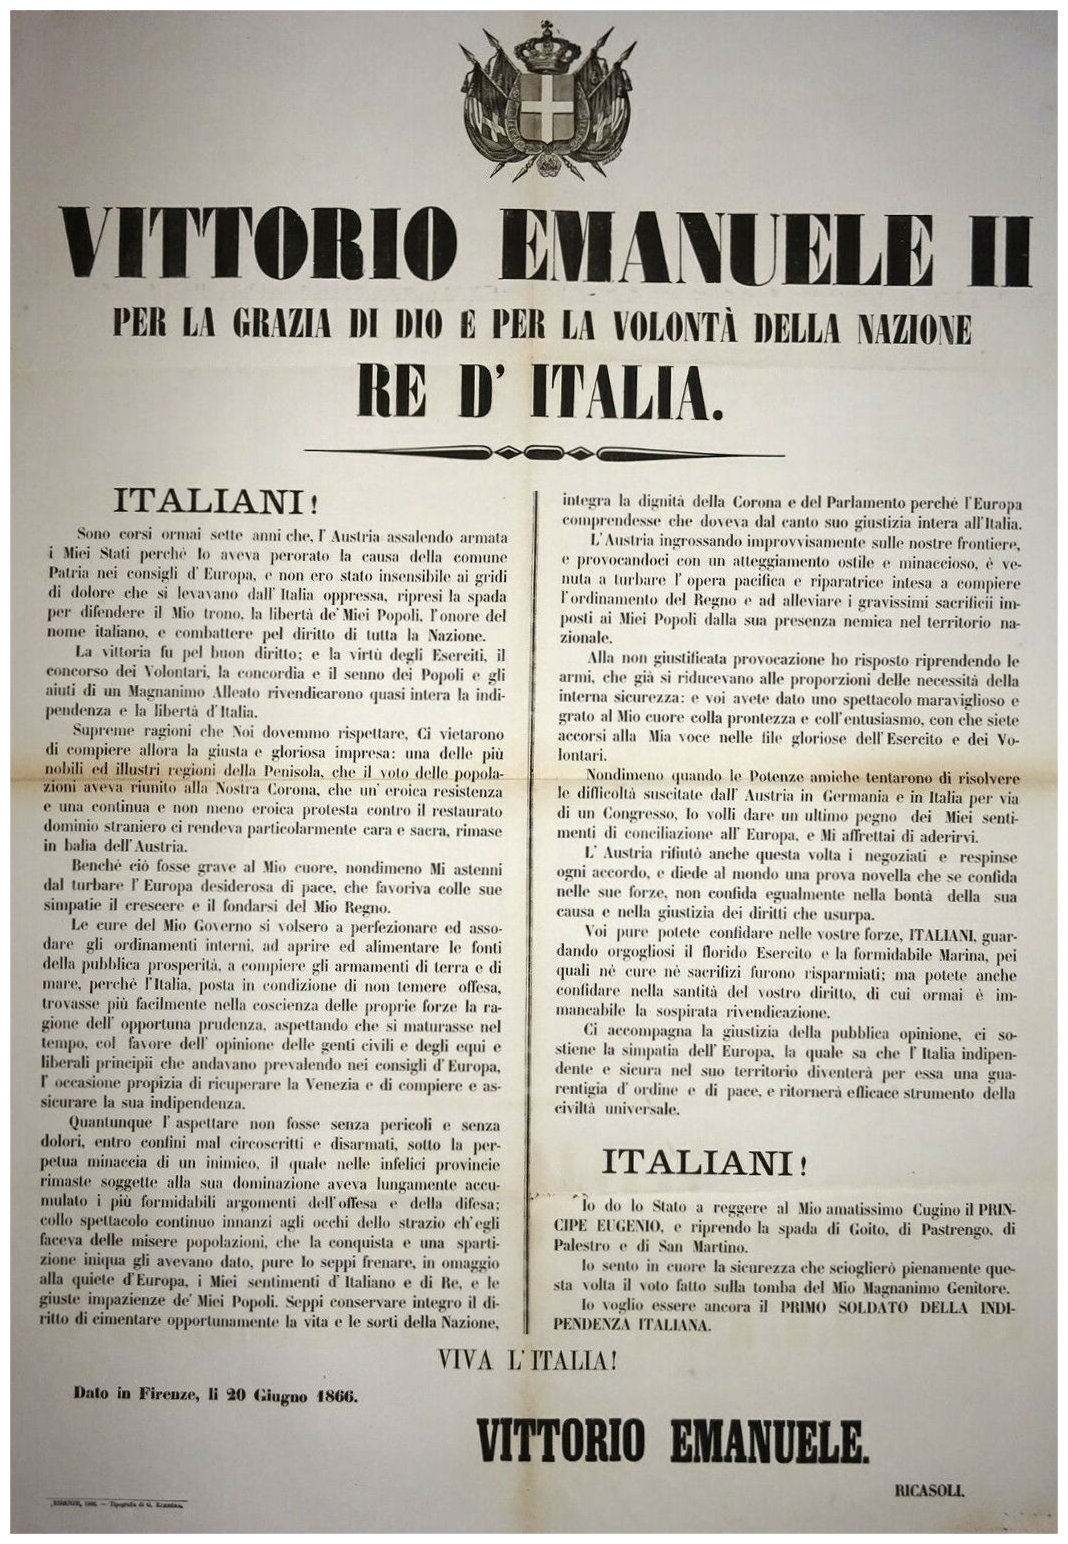 Dichiarazione di Vittorio Emanuele II per la 3a guerra di indipendenza